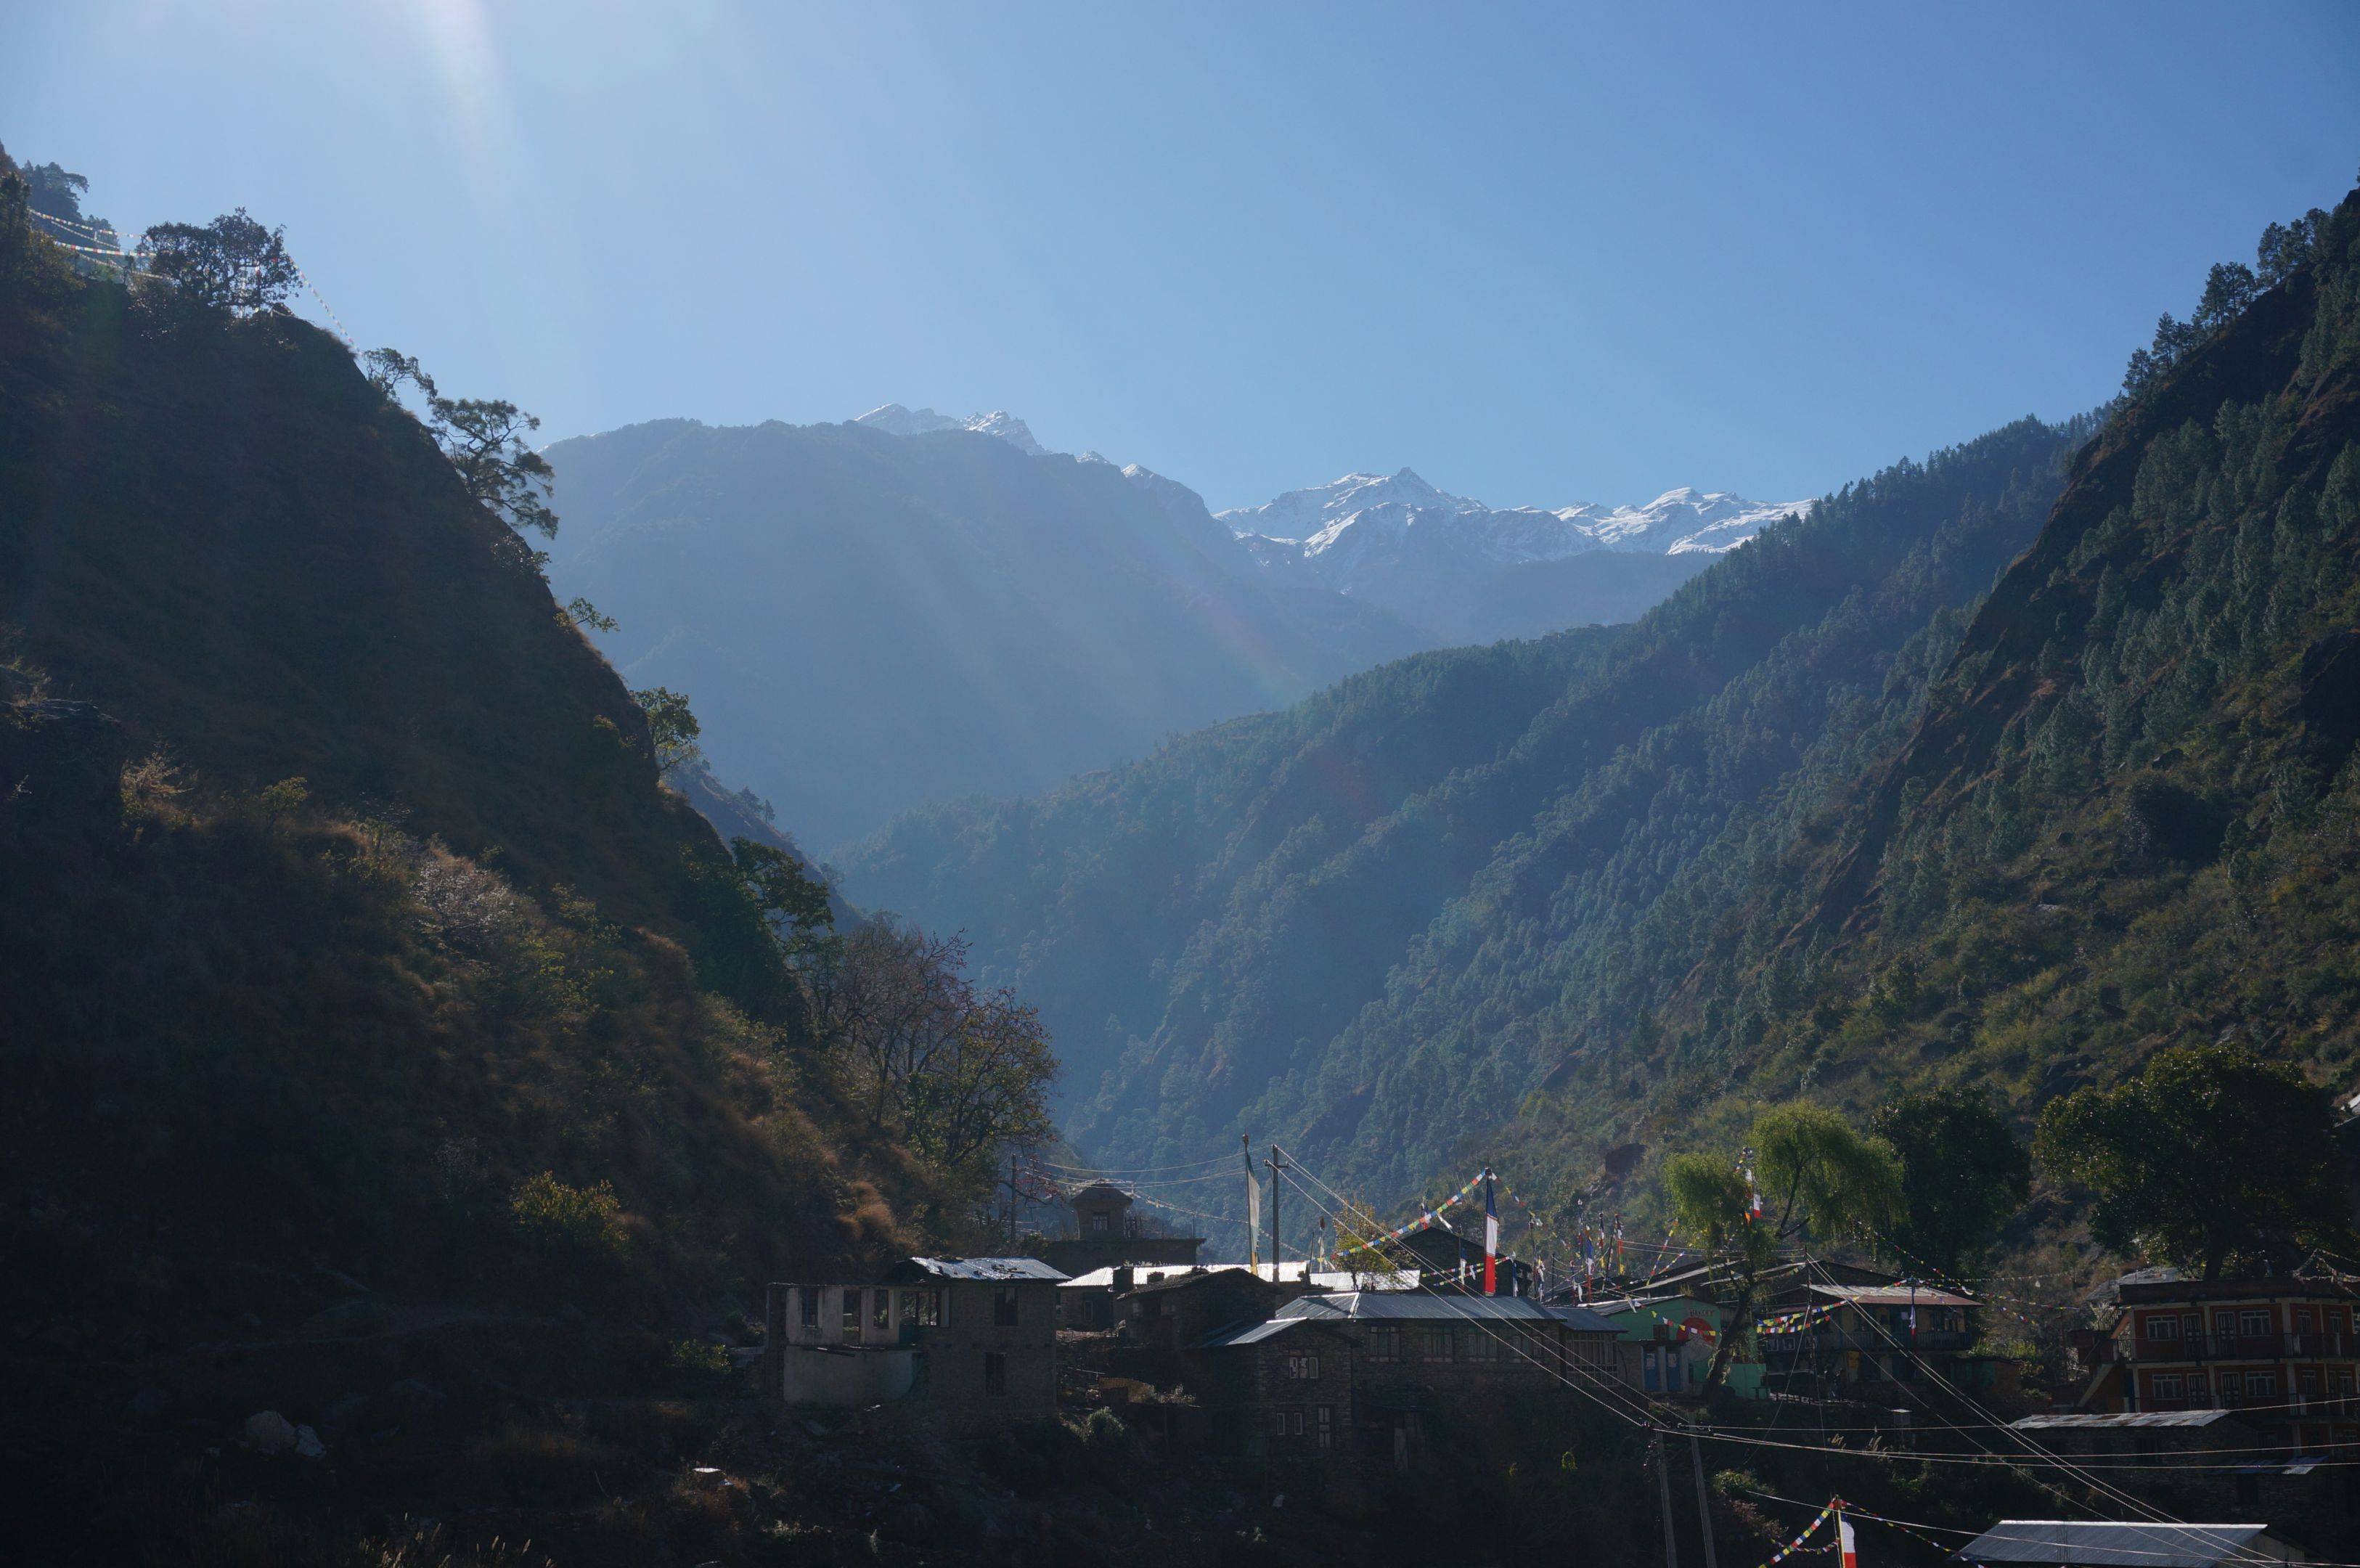 Kathmandu - Syabrubesi (1440 m) - 7 Stunden Fahrt